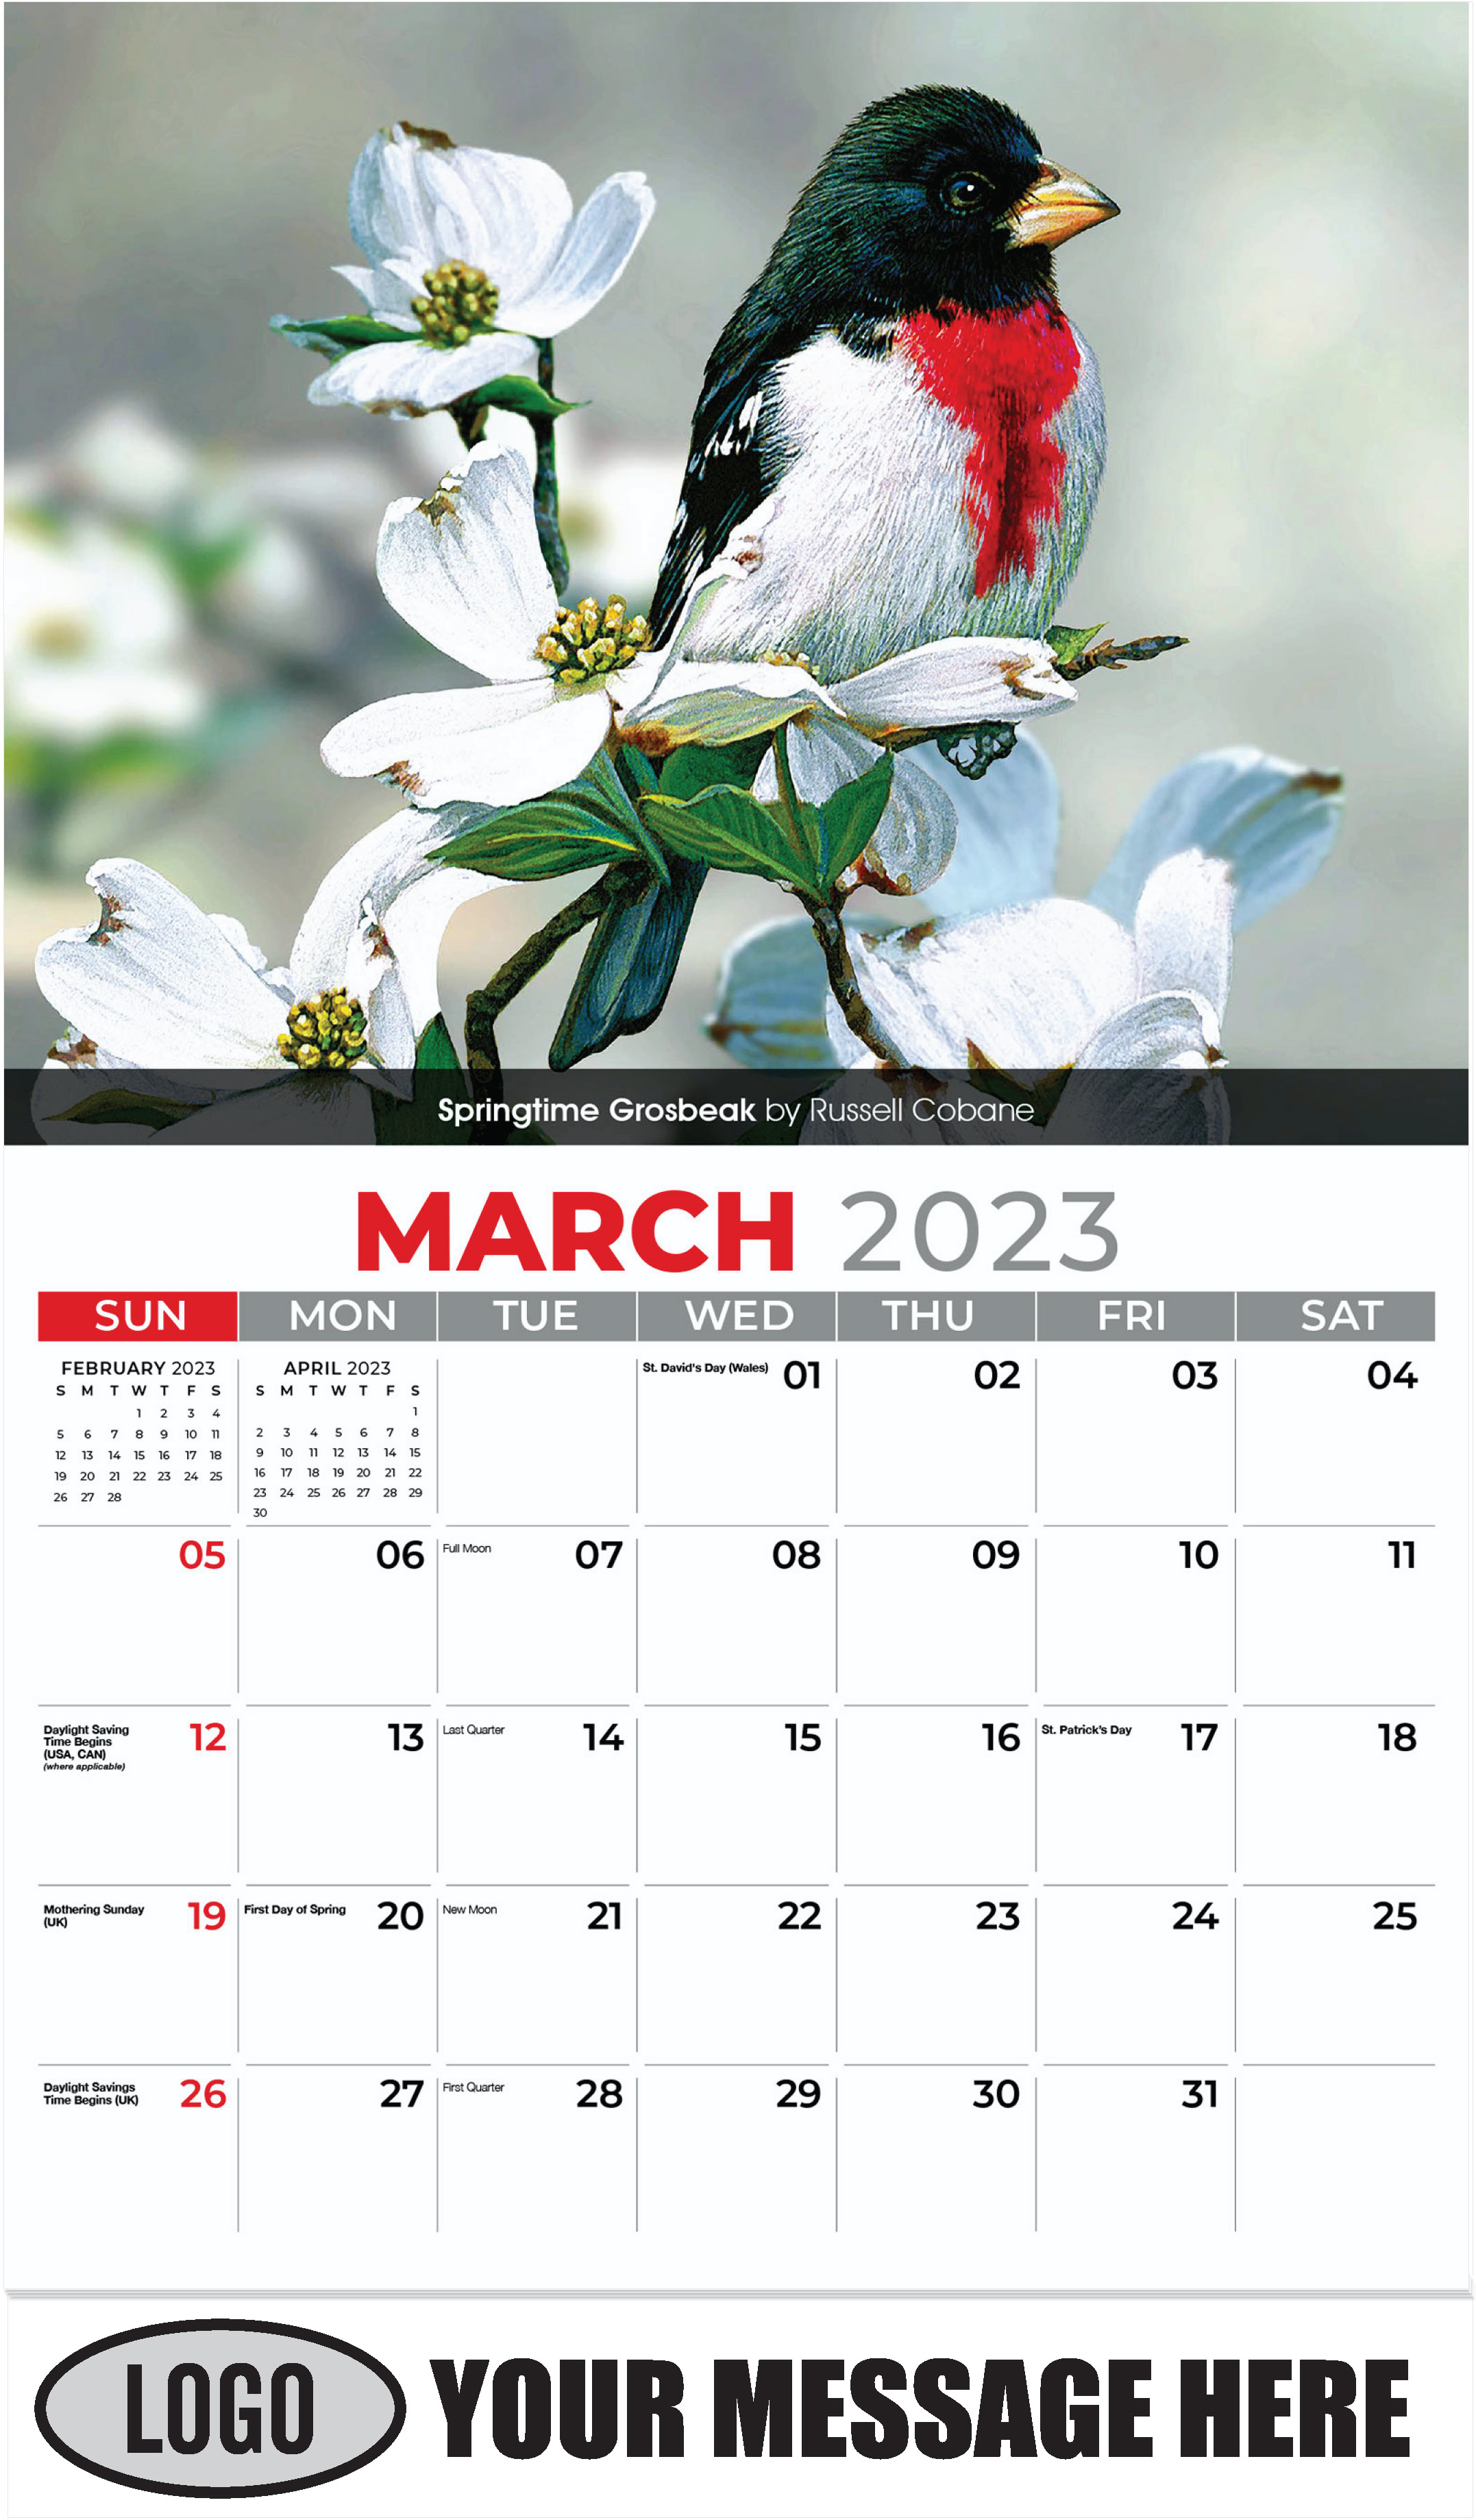 Springtime Grosbeak by Russell Cobane - March - Garden Birds 2023 Promotional Calendar